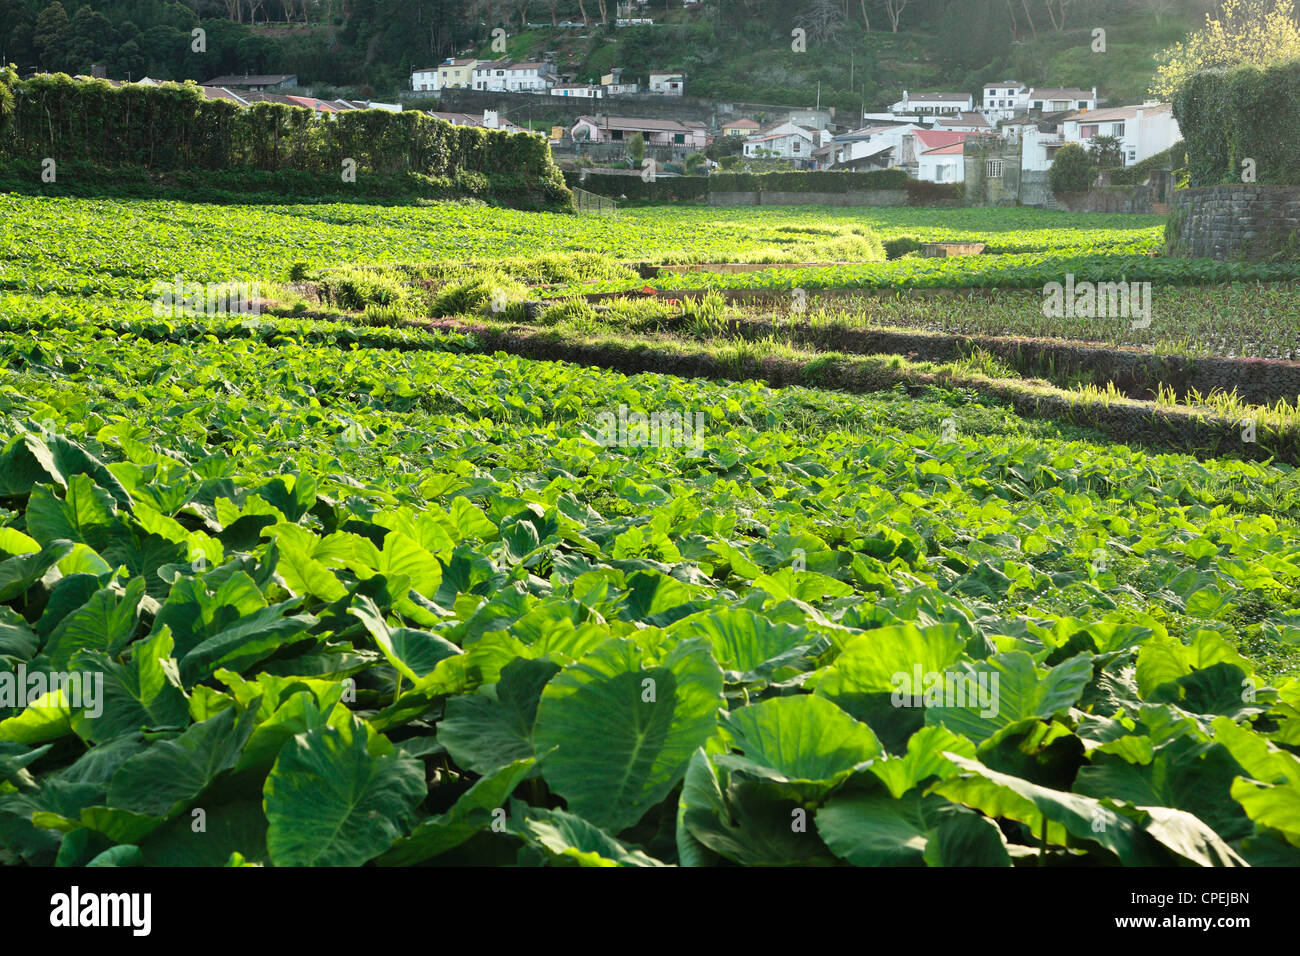 Le taro (Colocasia esculenta) plantation dans le village de Furnas. L'île de São Miguel, Açores, Portugal. Banque D'Images